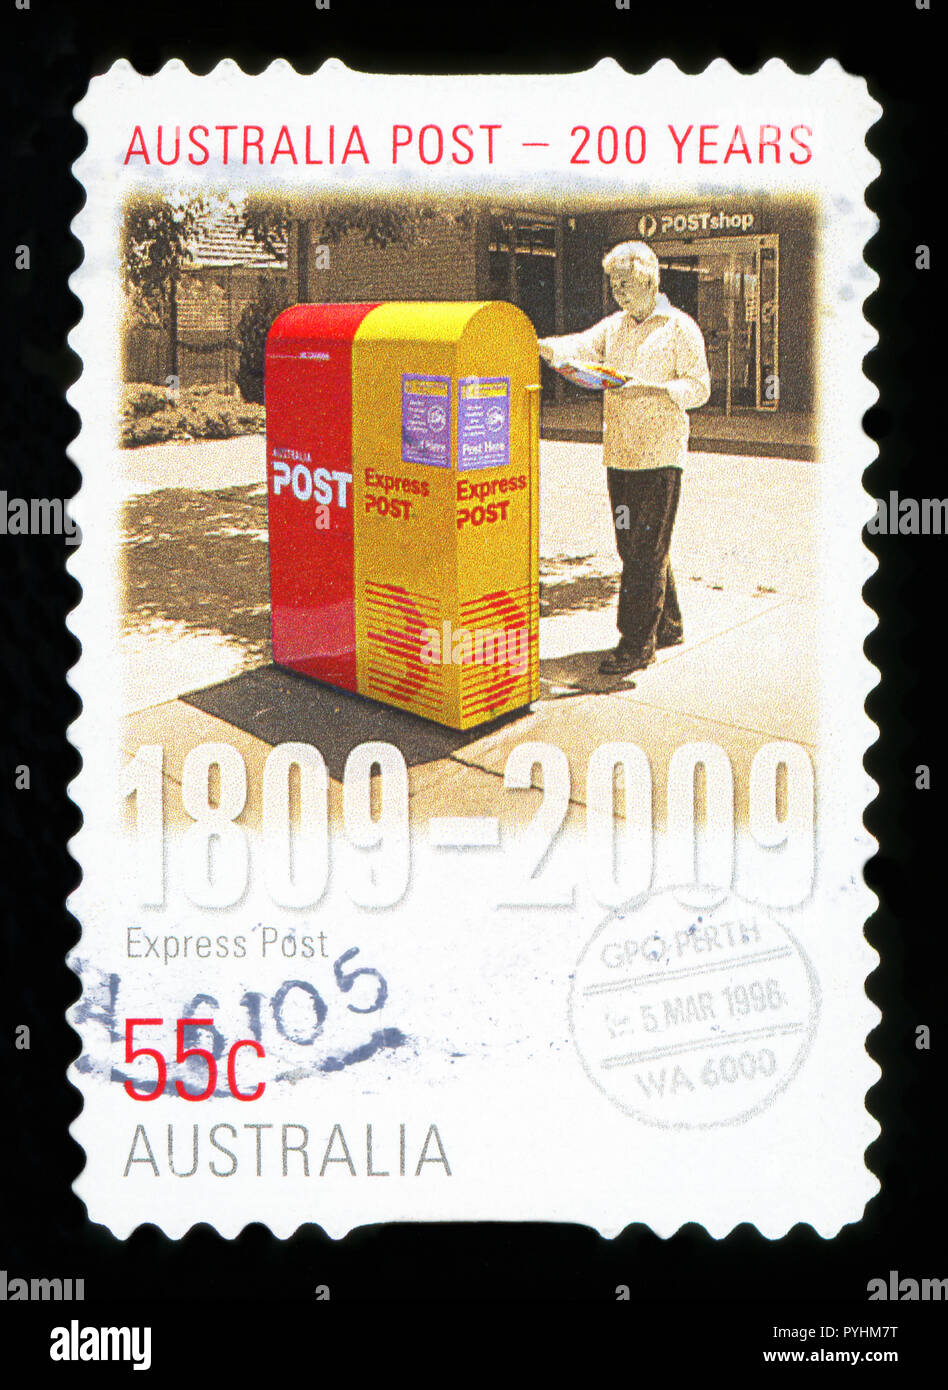 Australien - ca. 2009: Eine australische Briefmarke abgebrochen, Express Post - Australia Post 200 Jahre, ca. 2009 Stockfoto